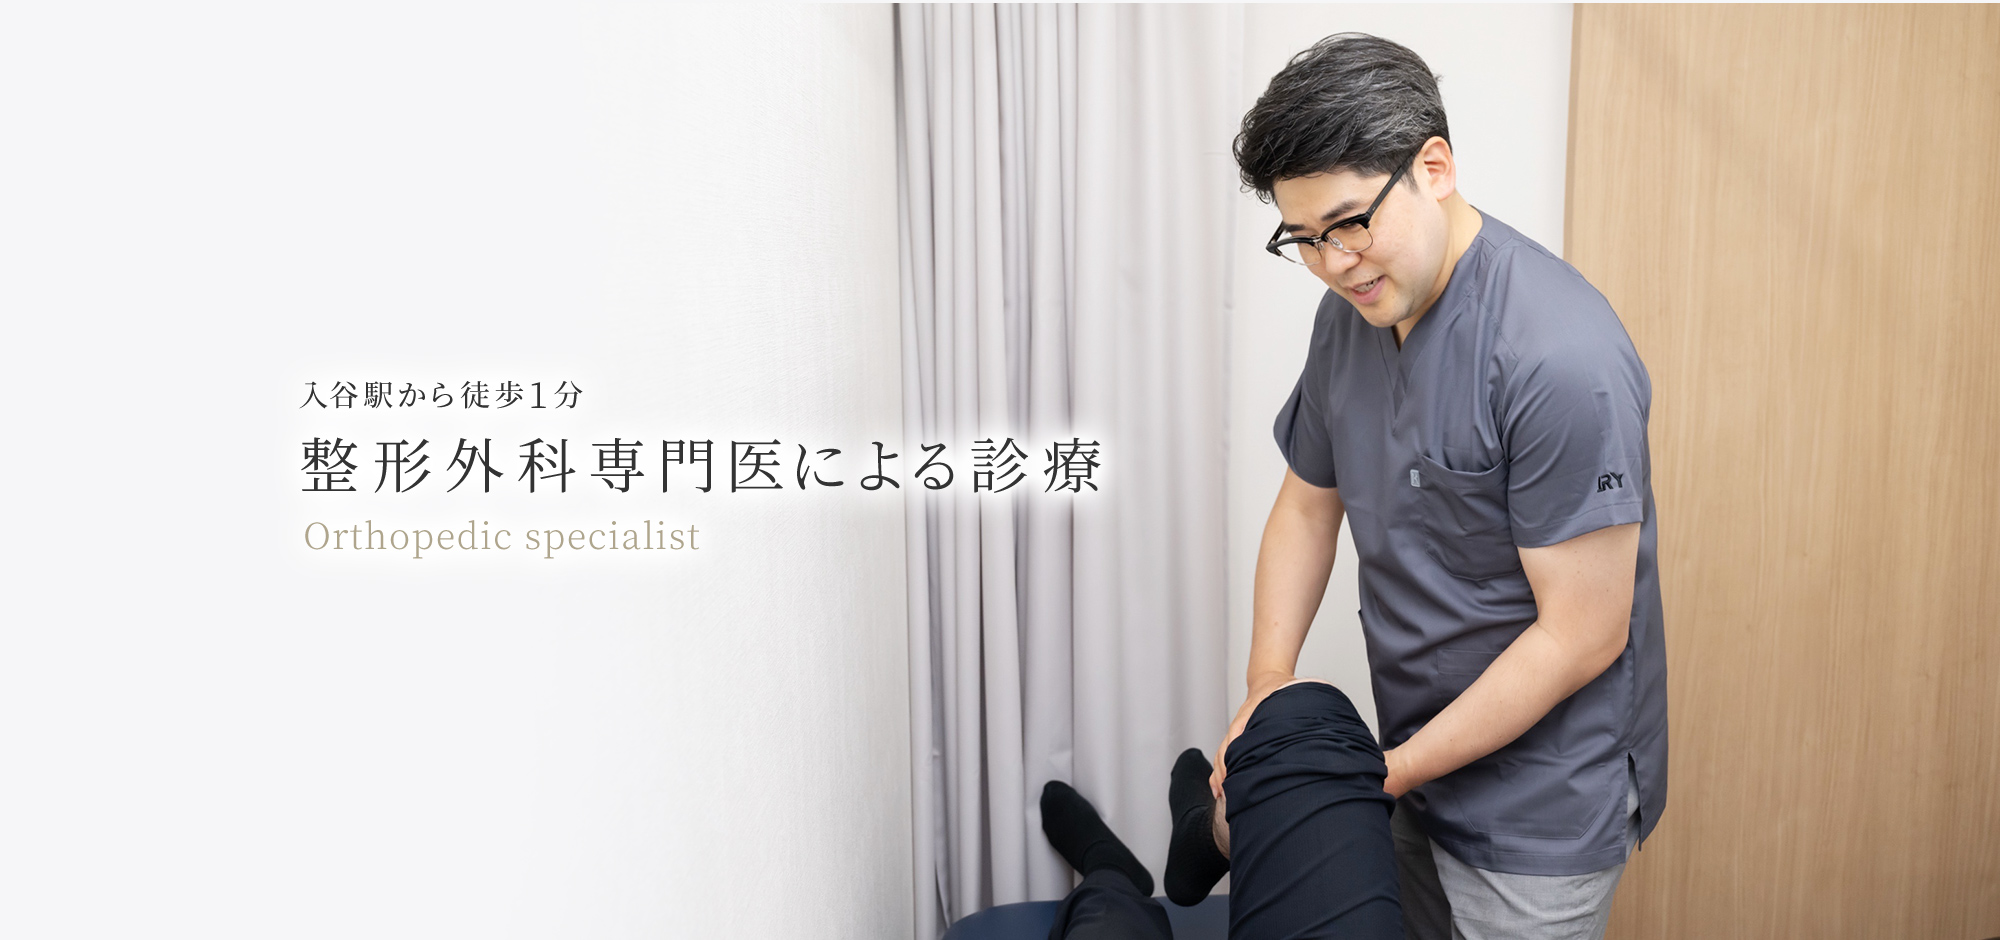 入谷駅から徒歩○分 整形外科専門医による診療 Orthopedic specialist